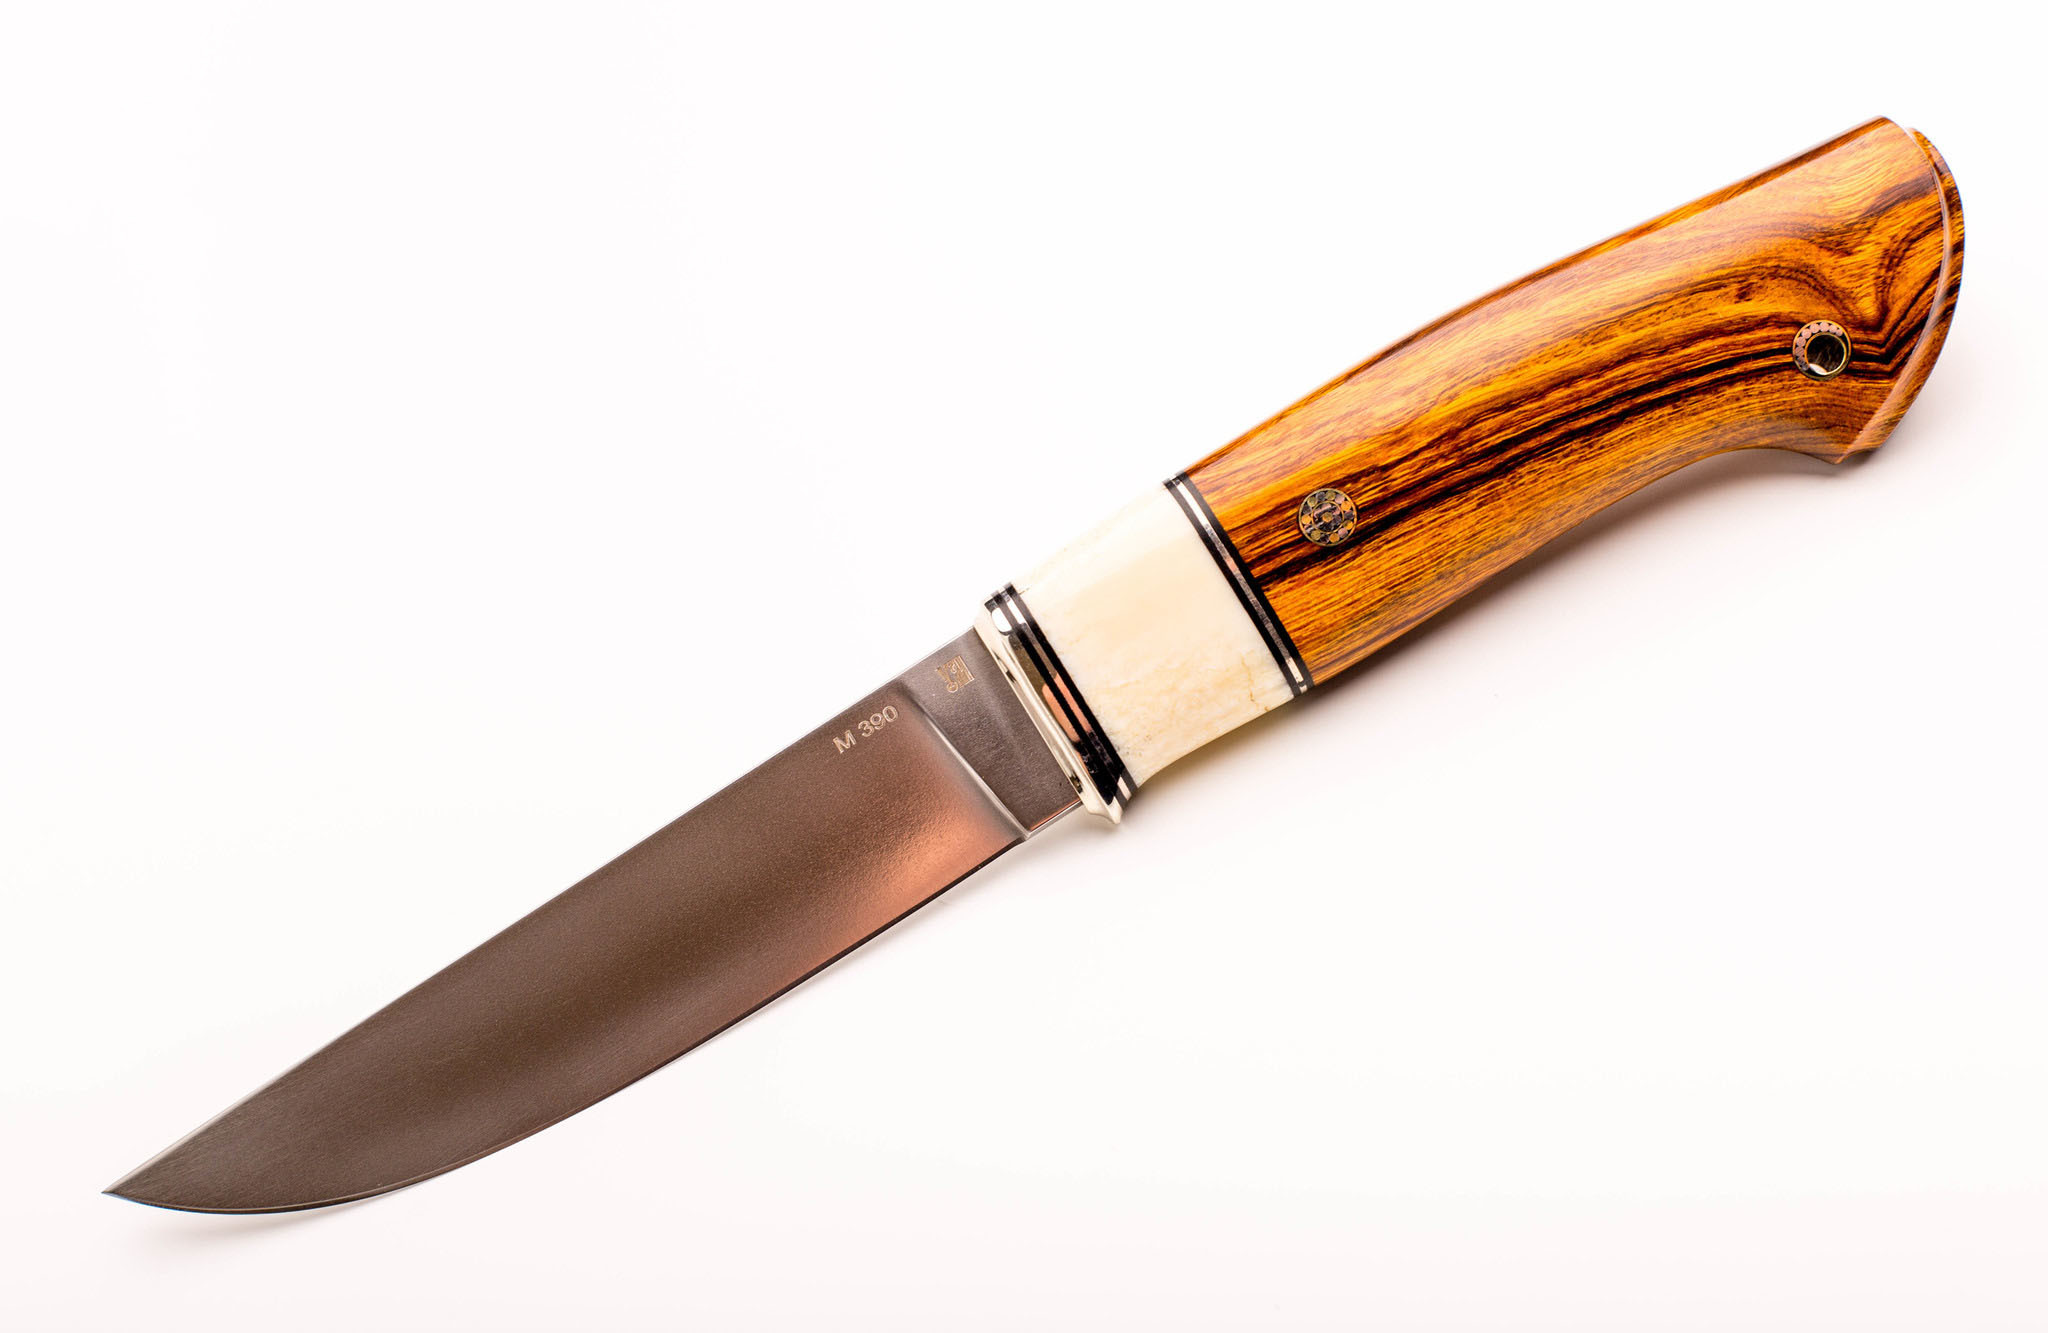 Нож Лидер 3, сталь M390, железное дерево, вставка рог лося нож охотничий